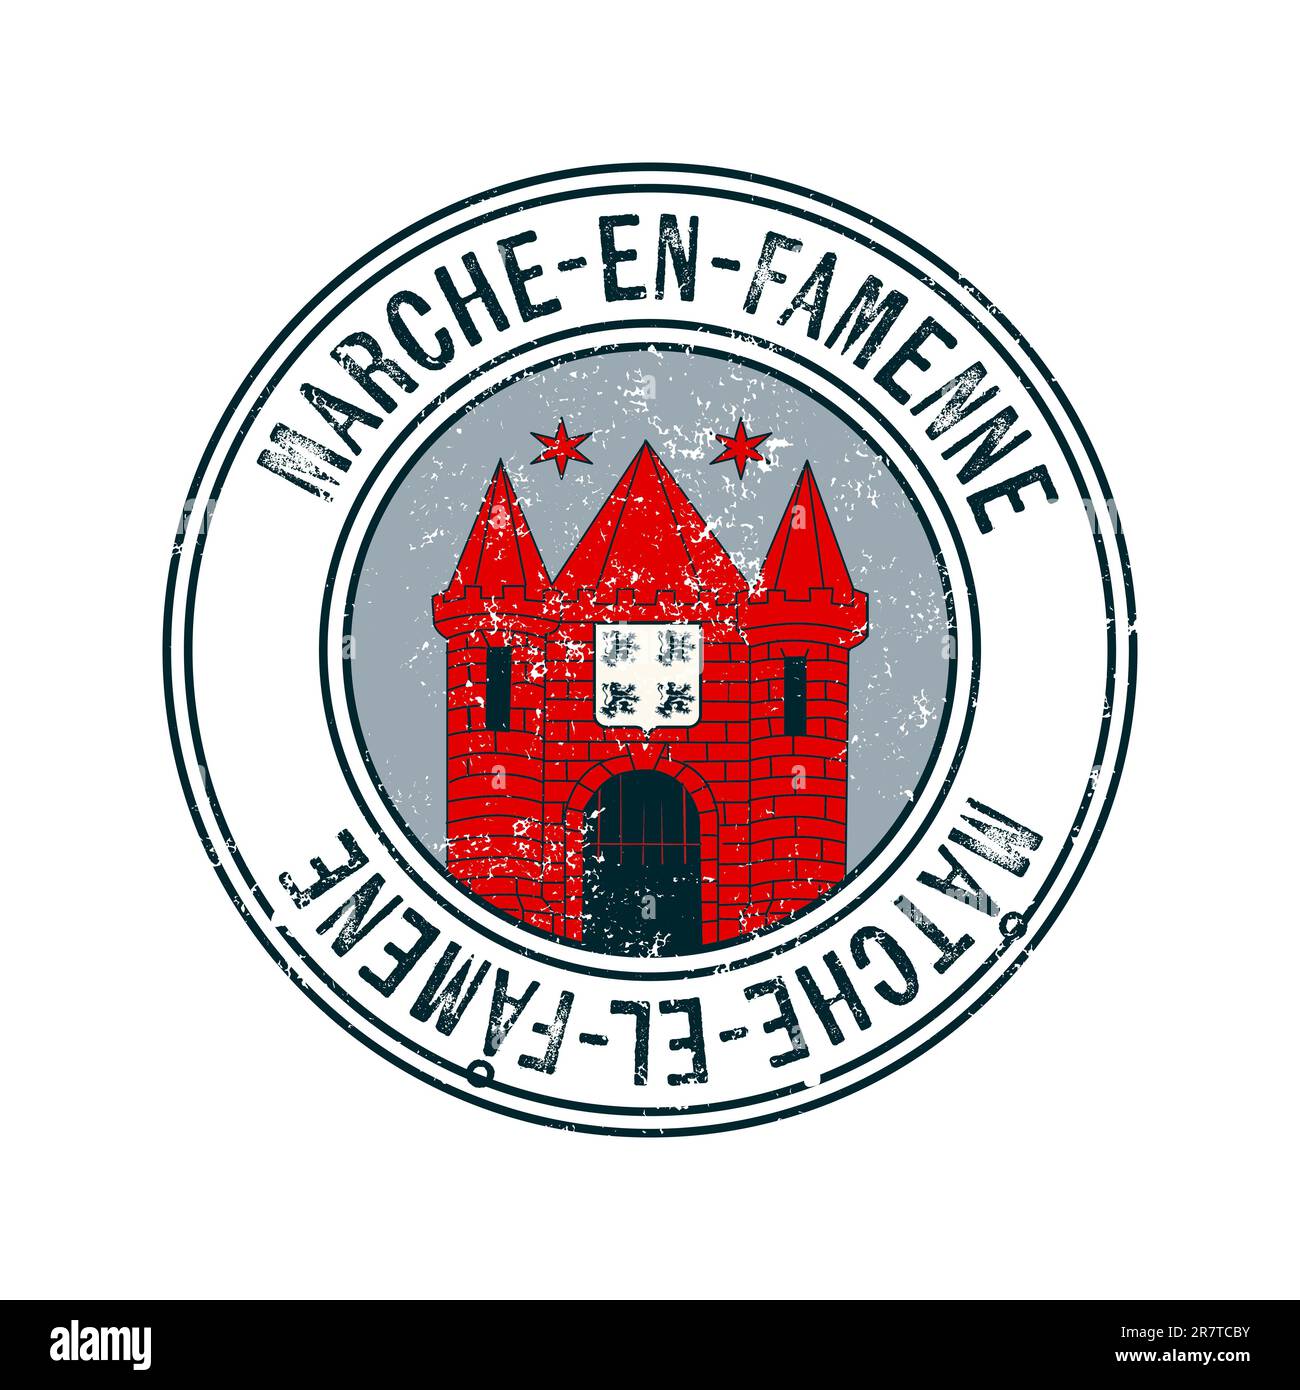 Marche en Famenne, Belgio francobollo di gomma vettoriale a grunge su sfondo bianco Foto Stock